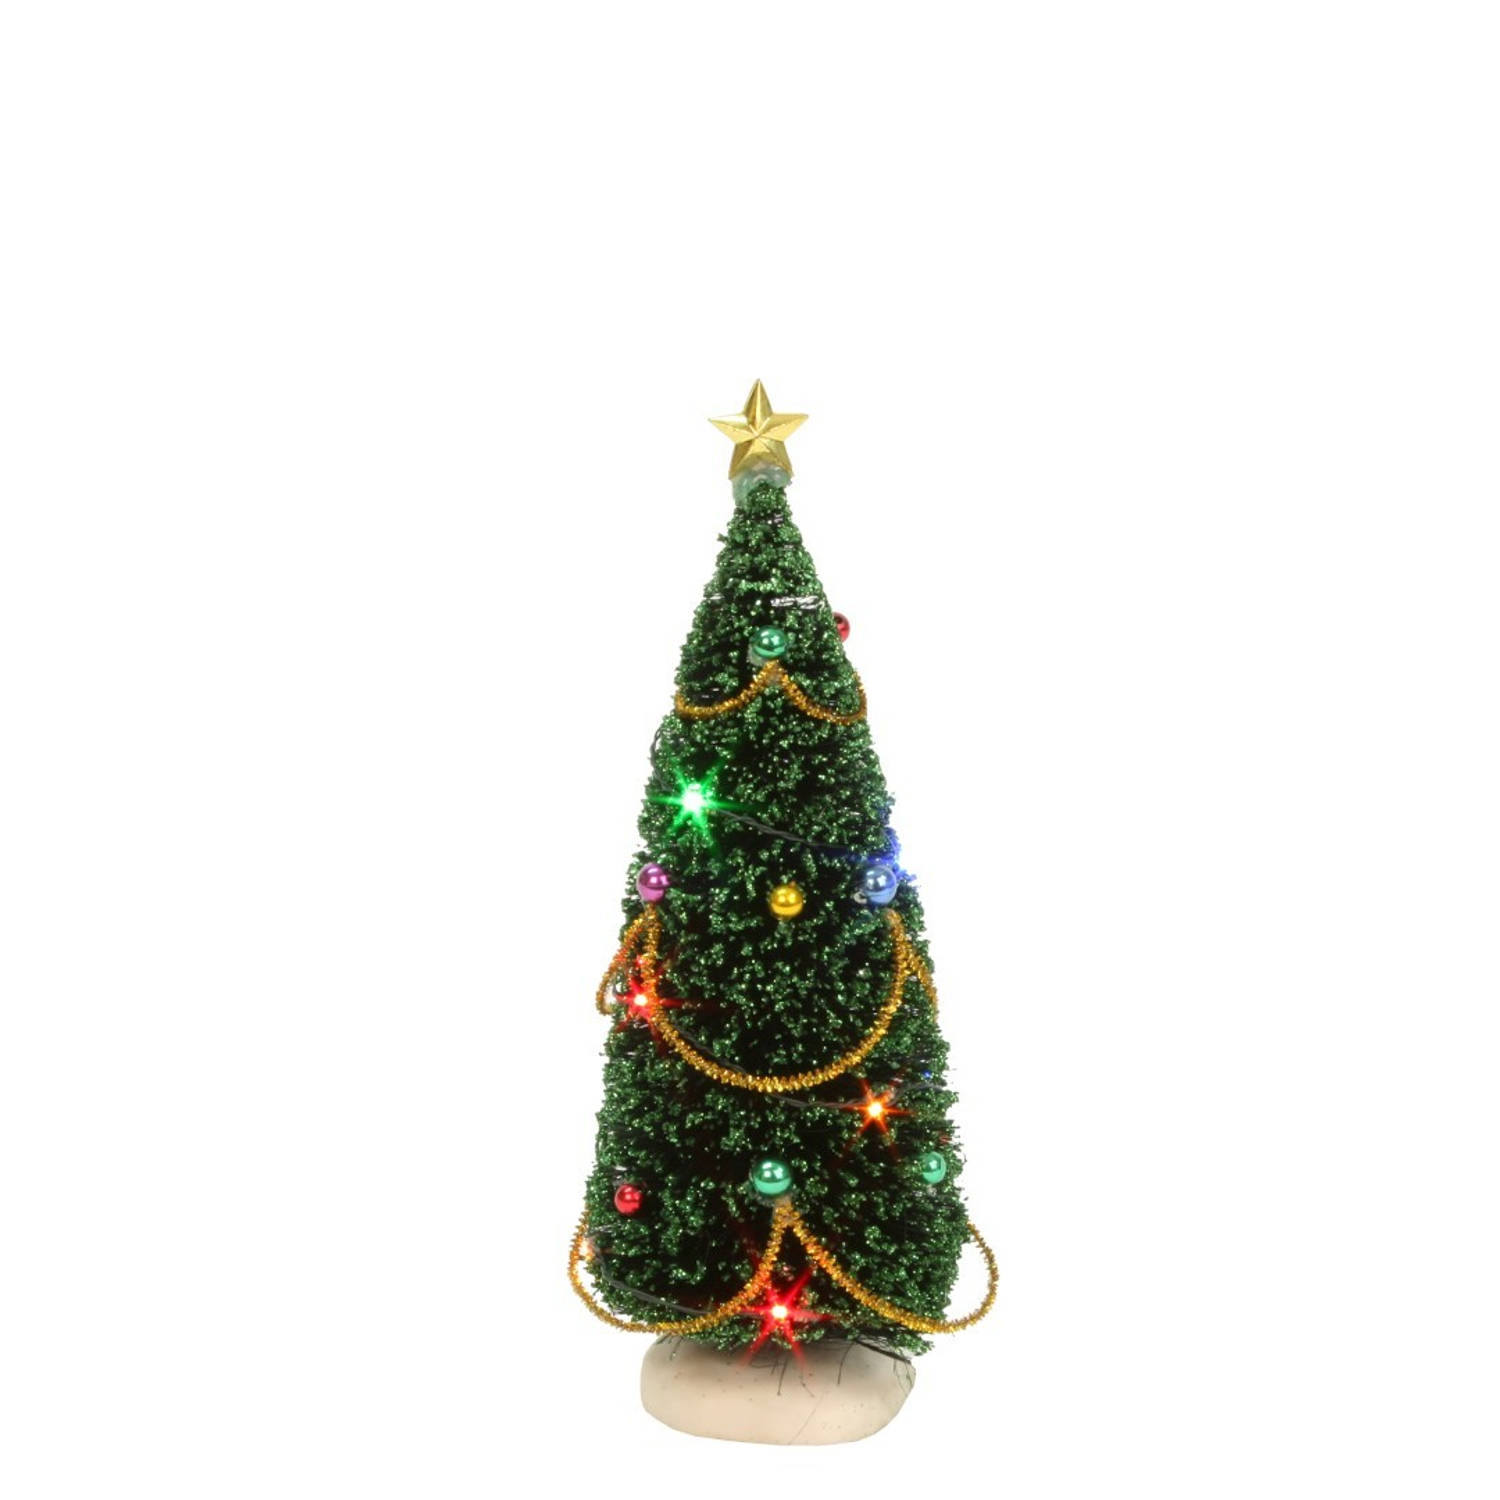 Kerstboom met verlichting 15 cm hoog